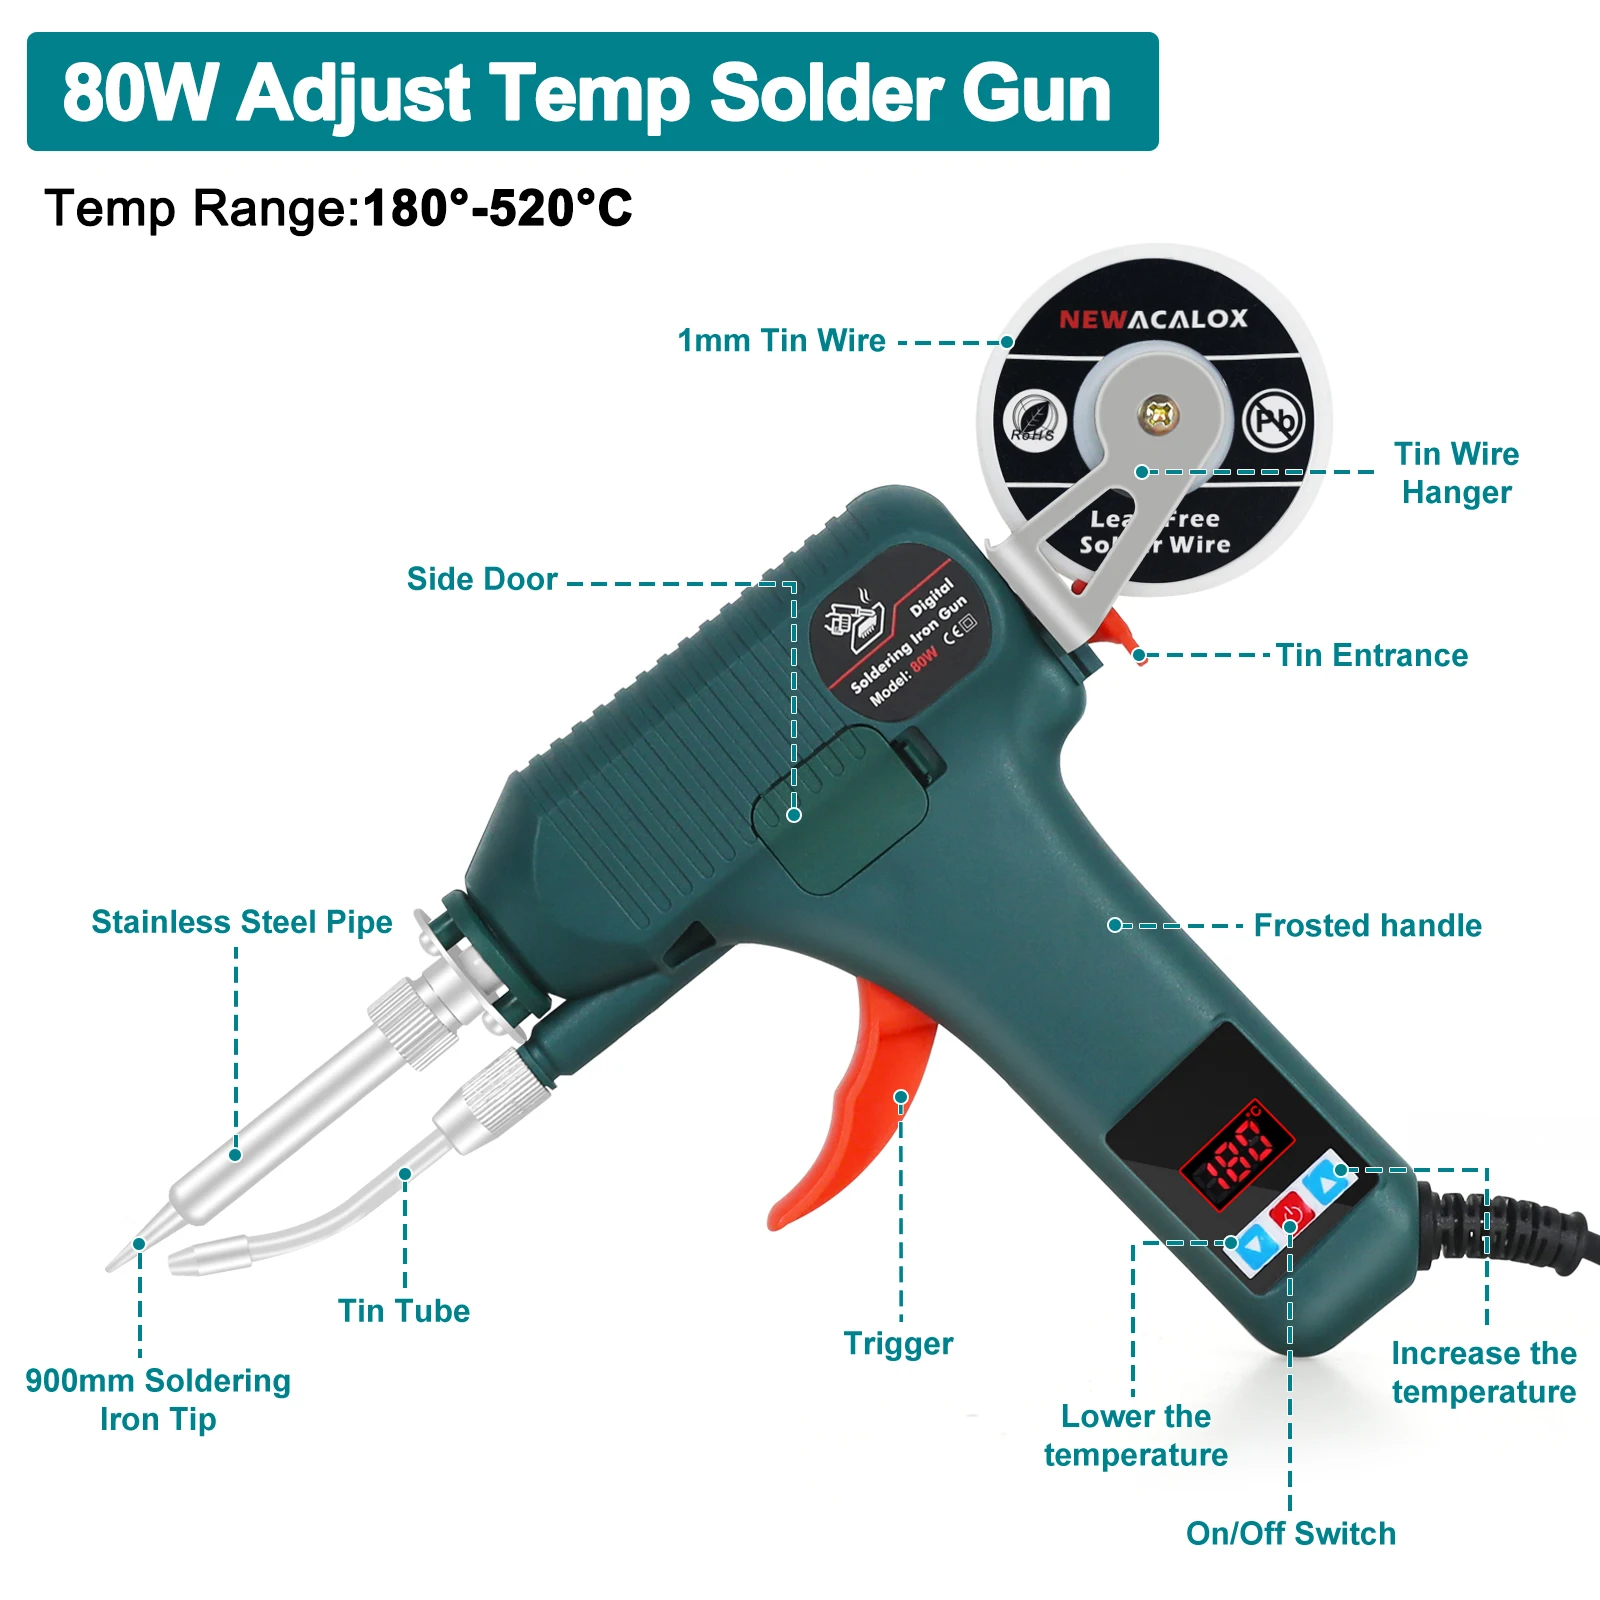 אקדח הלחמה דיגיטלי עם טמפרטורה מתכווננת 180-520° וגלגל הזנת חוט הלחמה אוטומטי